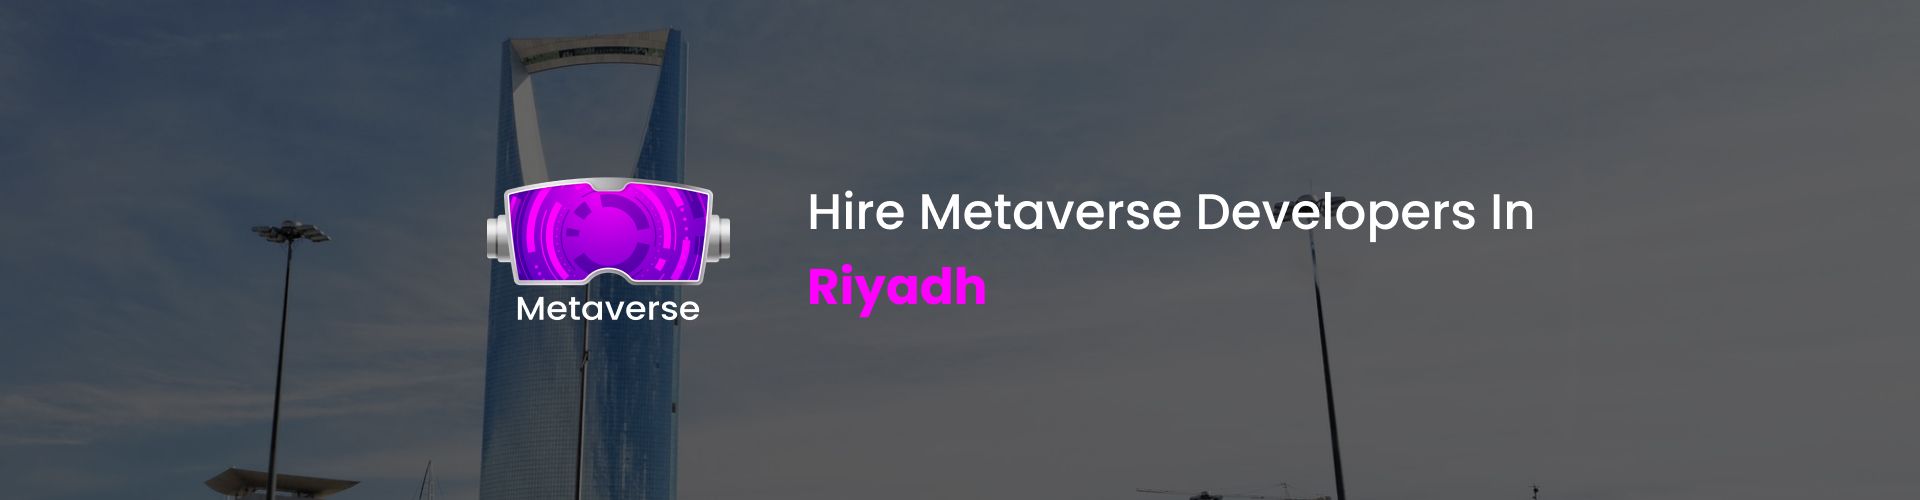 metaverse developers in riyadh